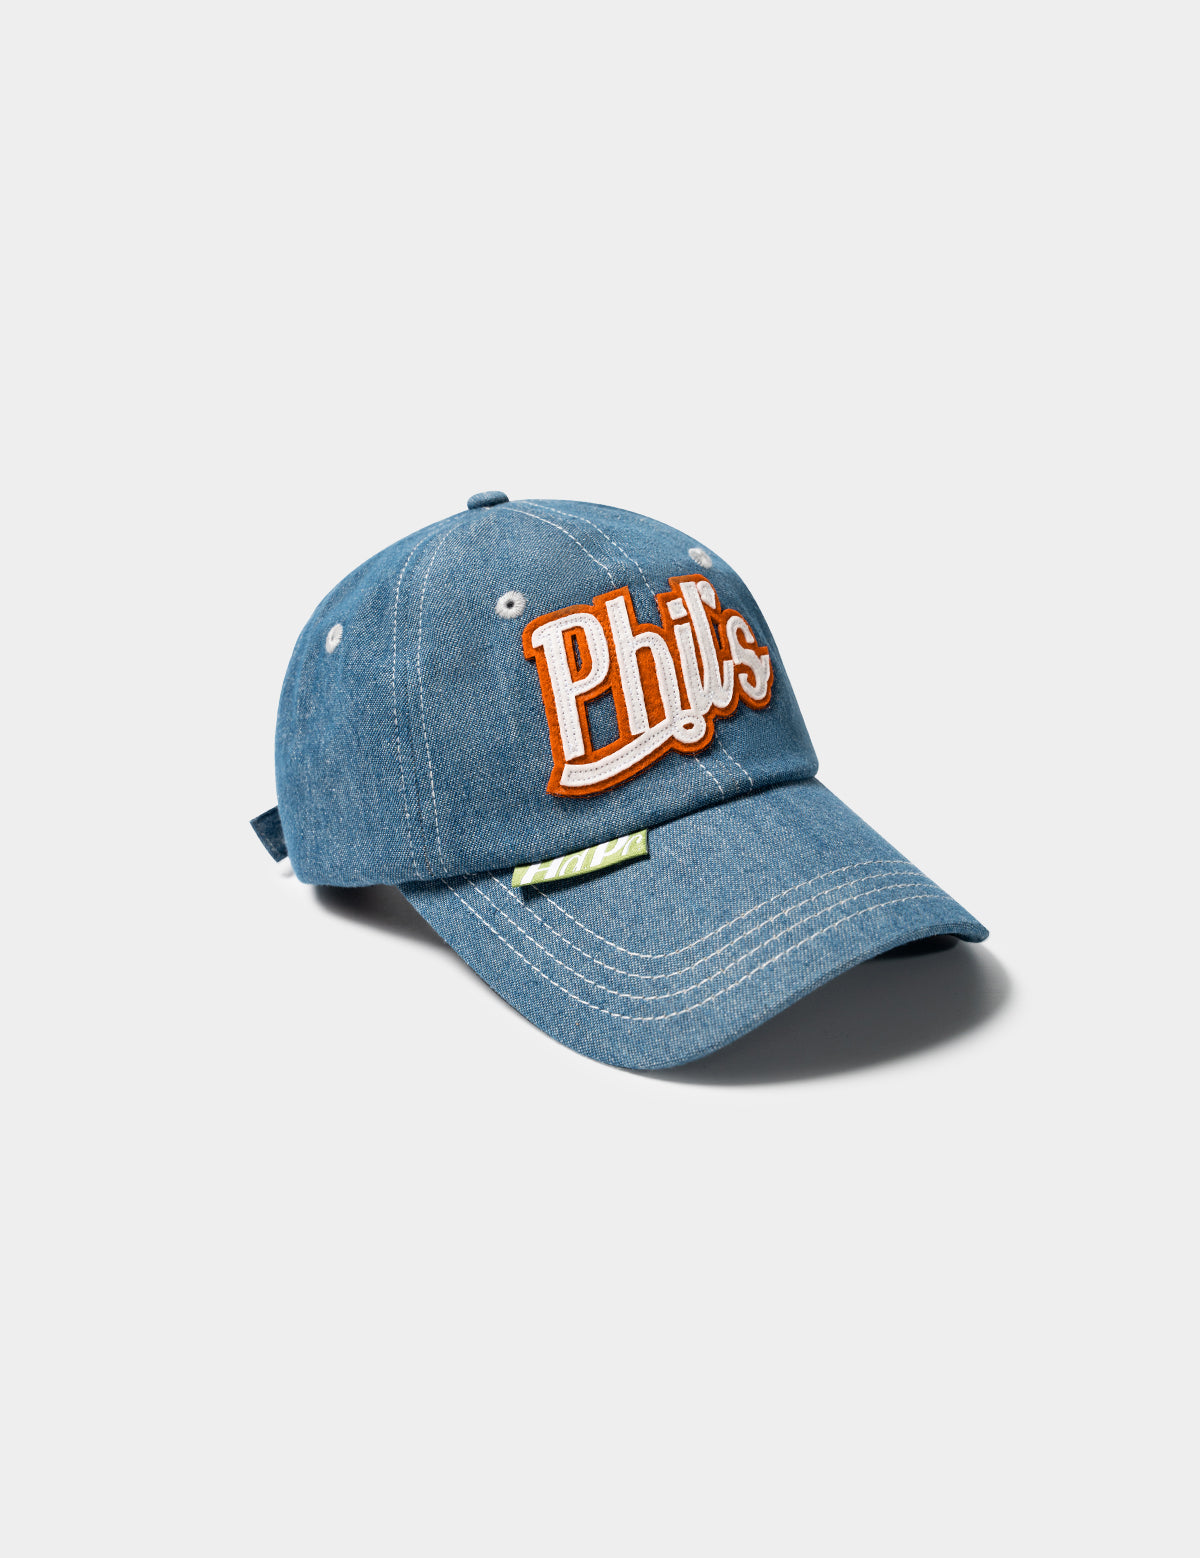 PHIL'S DENIM CAP